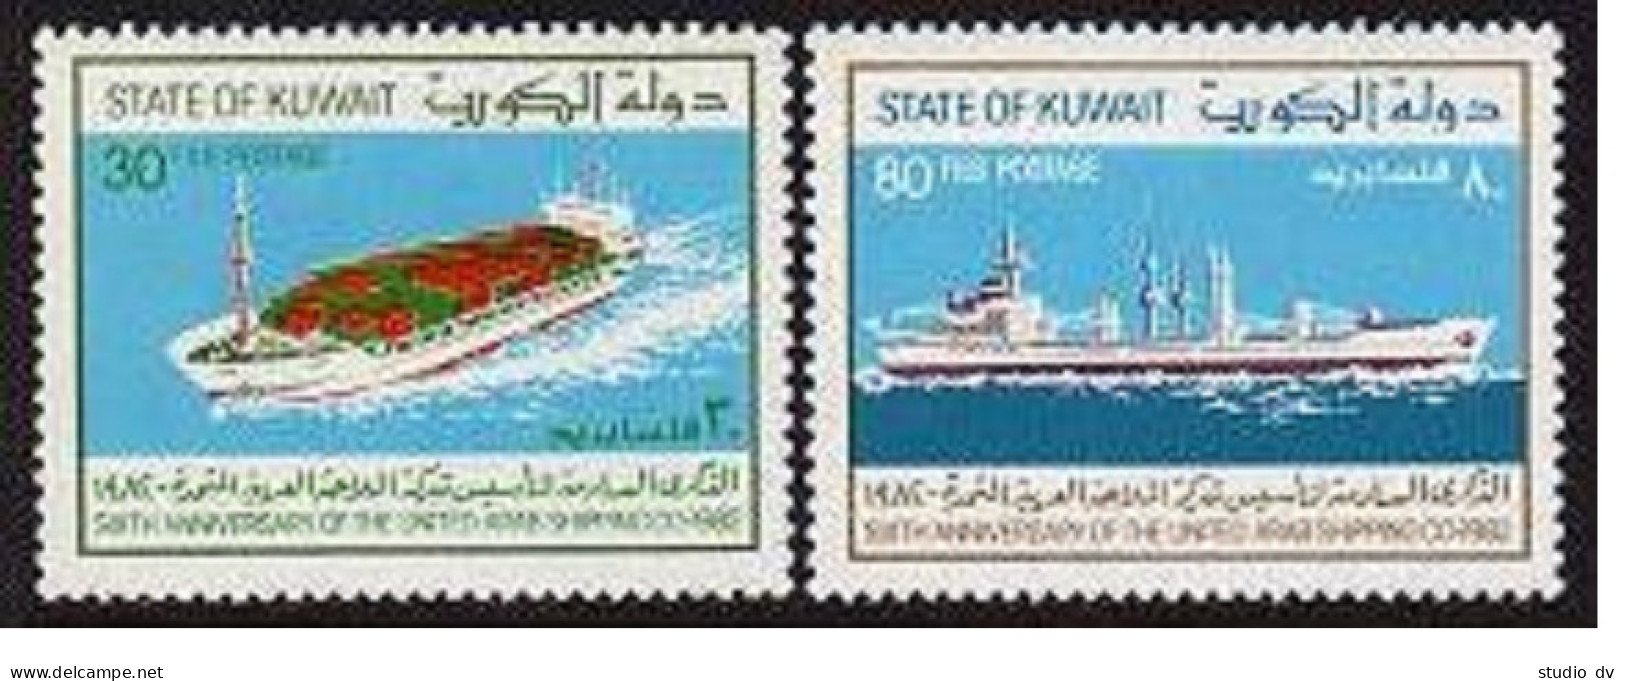 Kuwait 896-897, MNH. Michel 938-939. United Arab Shipping Co, 6th Ann. 1982. - Kuwait